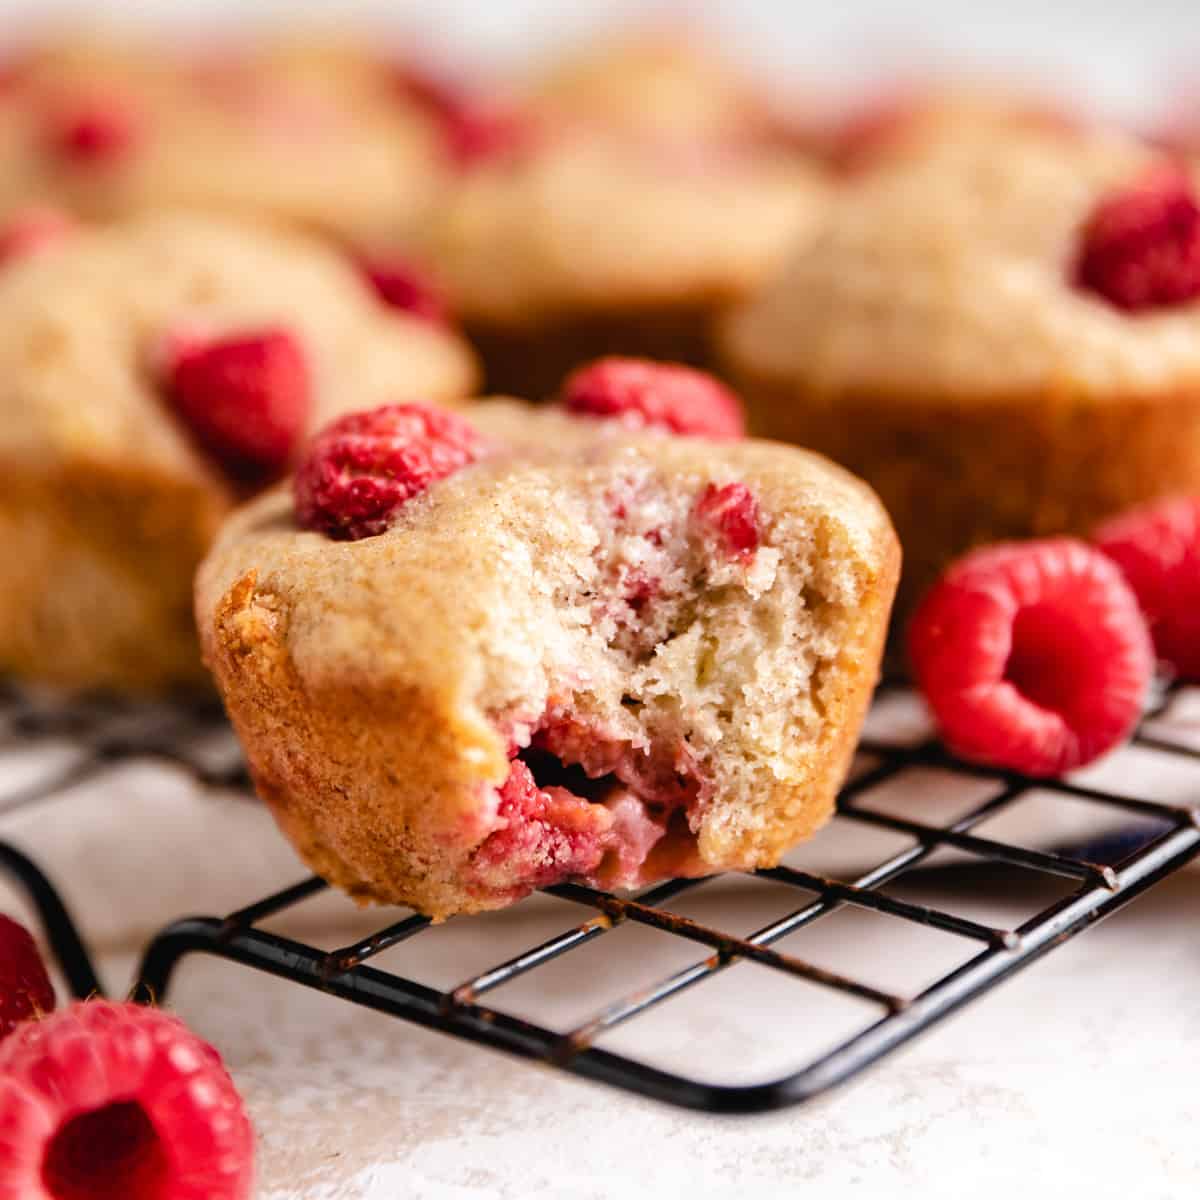 Banana raspberry muffins